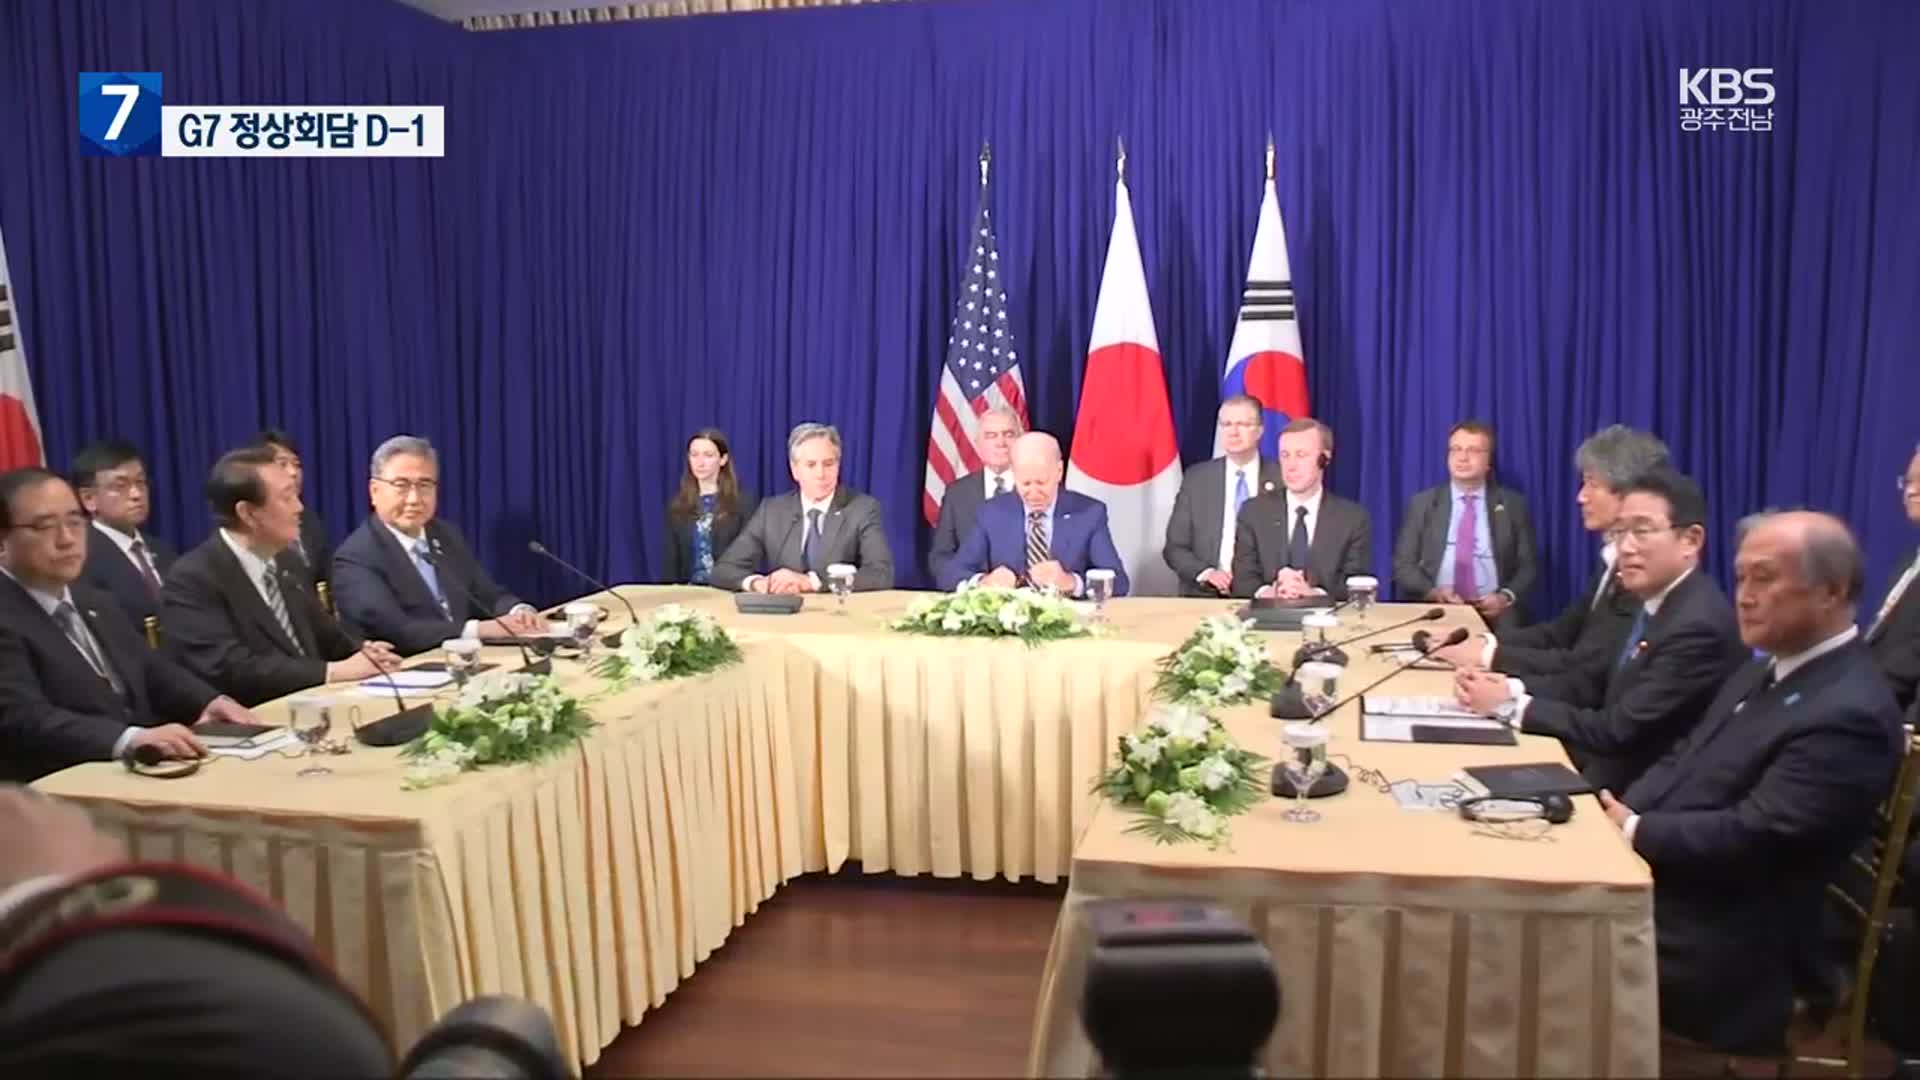 G7정상회의 D-1, 경계 강화…‘미일 정상회담’ 개최